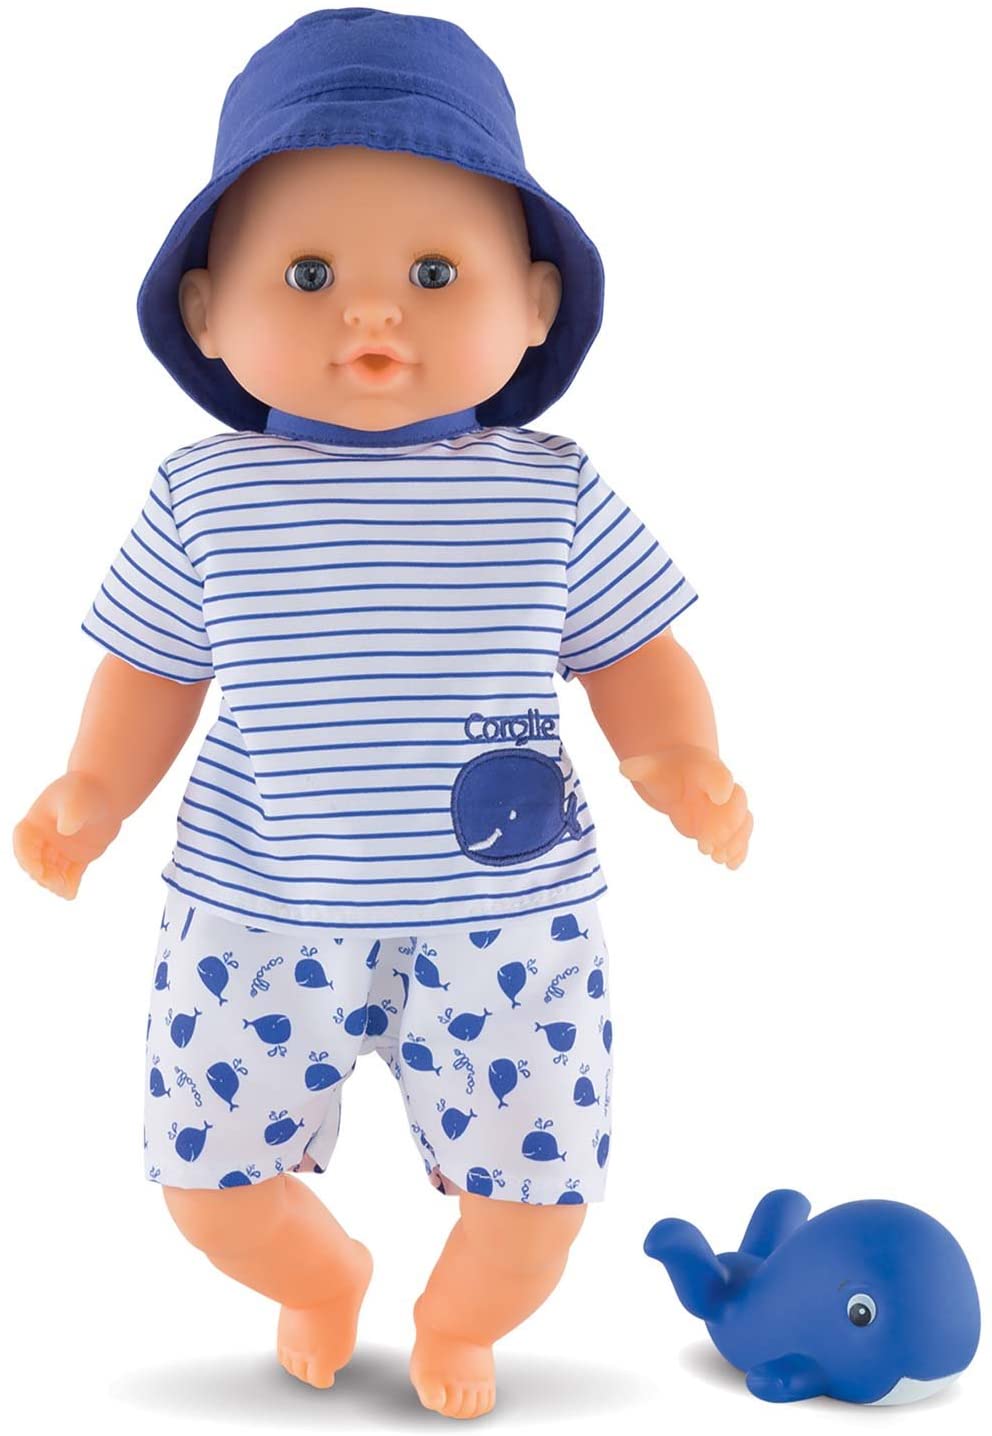 Corolle Mon Premier Poupon Bebe Bath Boy Toy Baby Doll, Blue, 12 inches